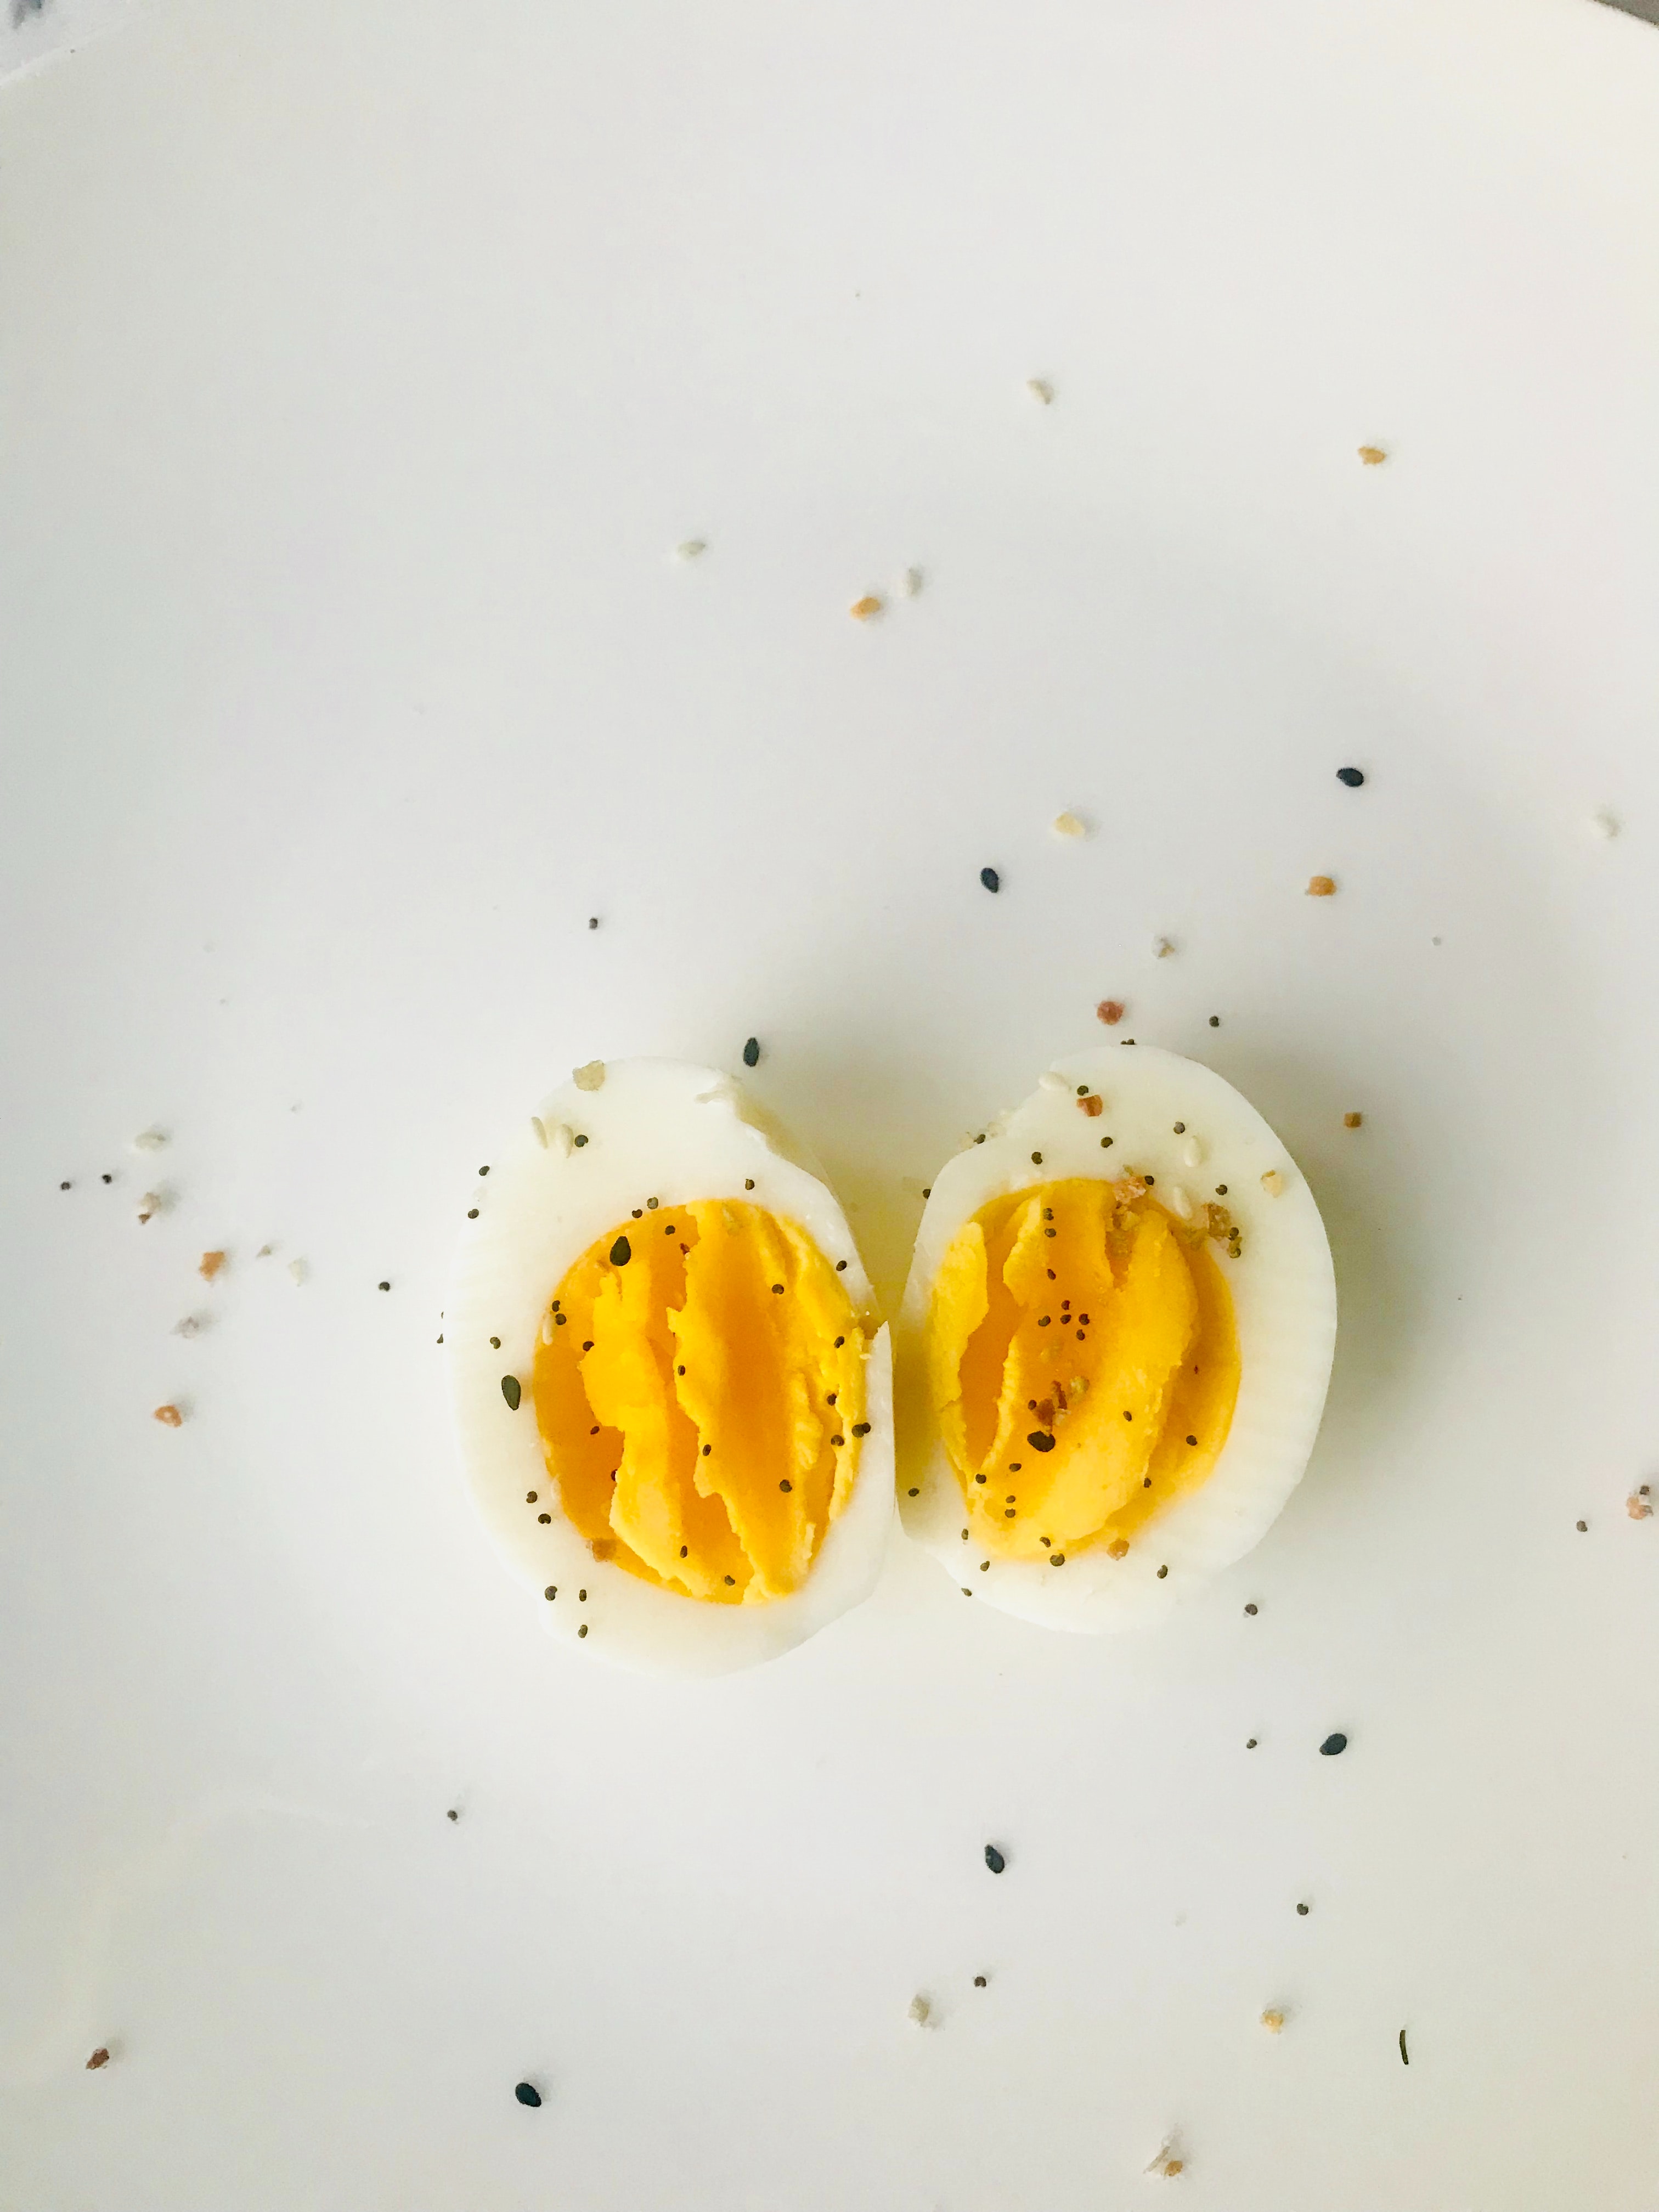 6 μυστικά για να βράσεις τ' αυγά πιο εύκολα